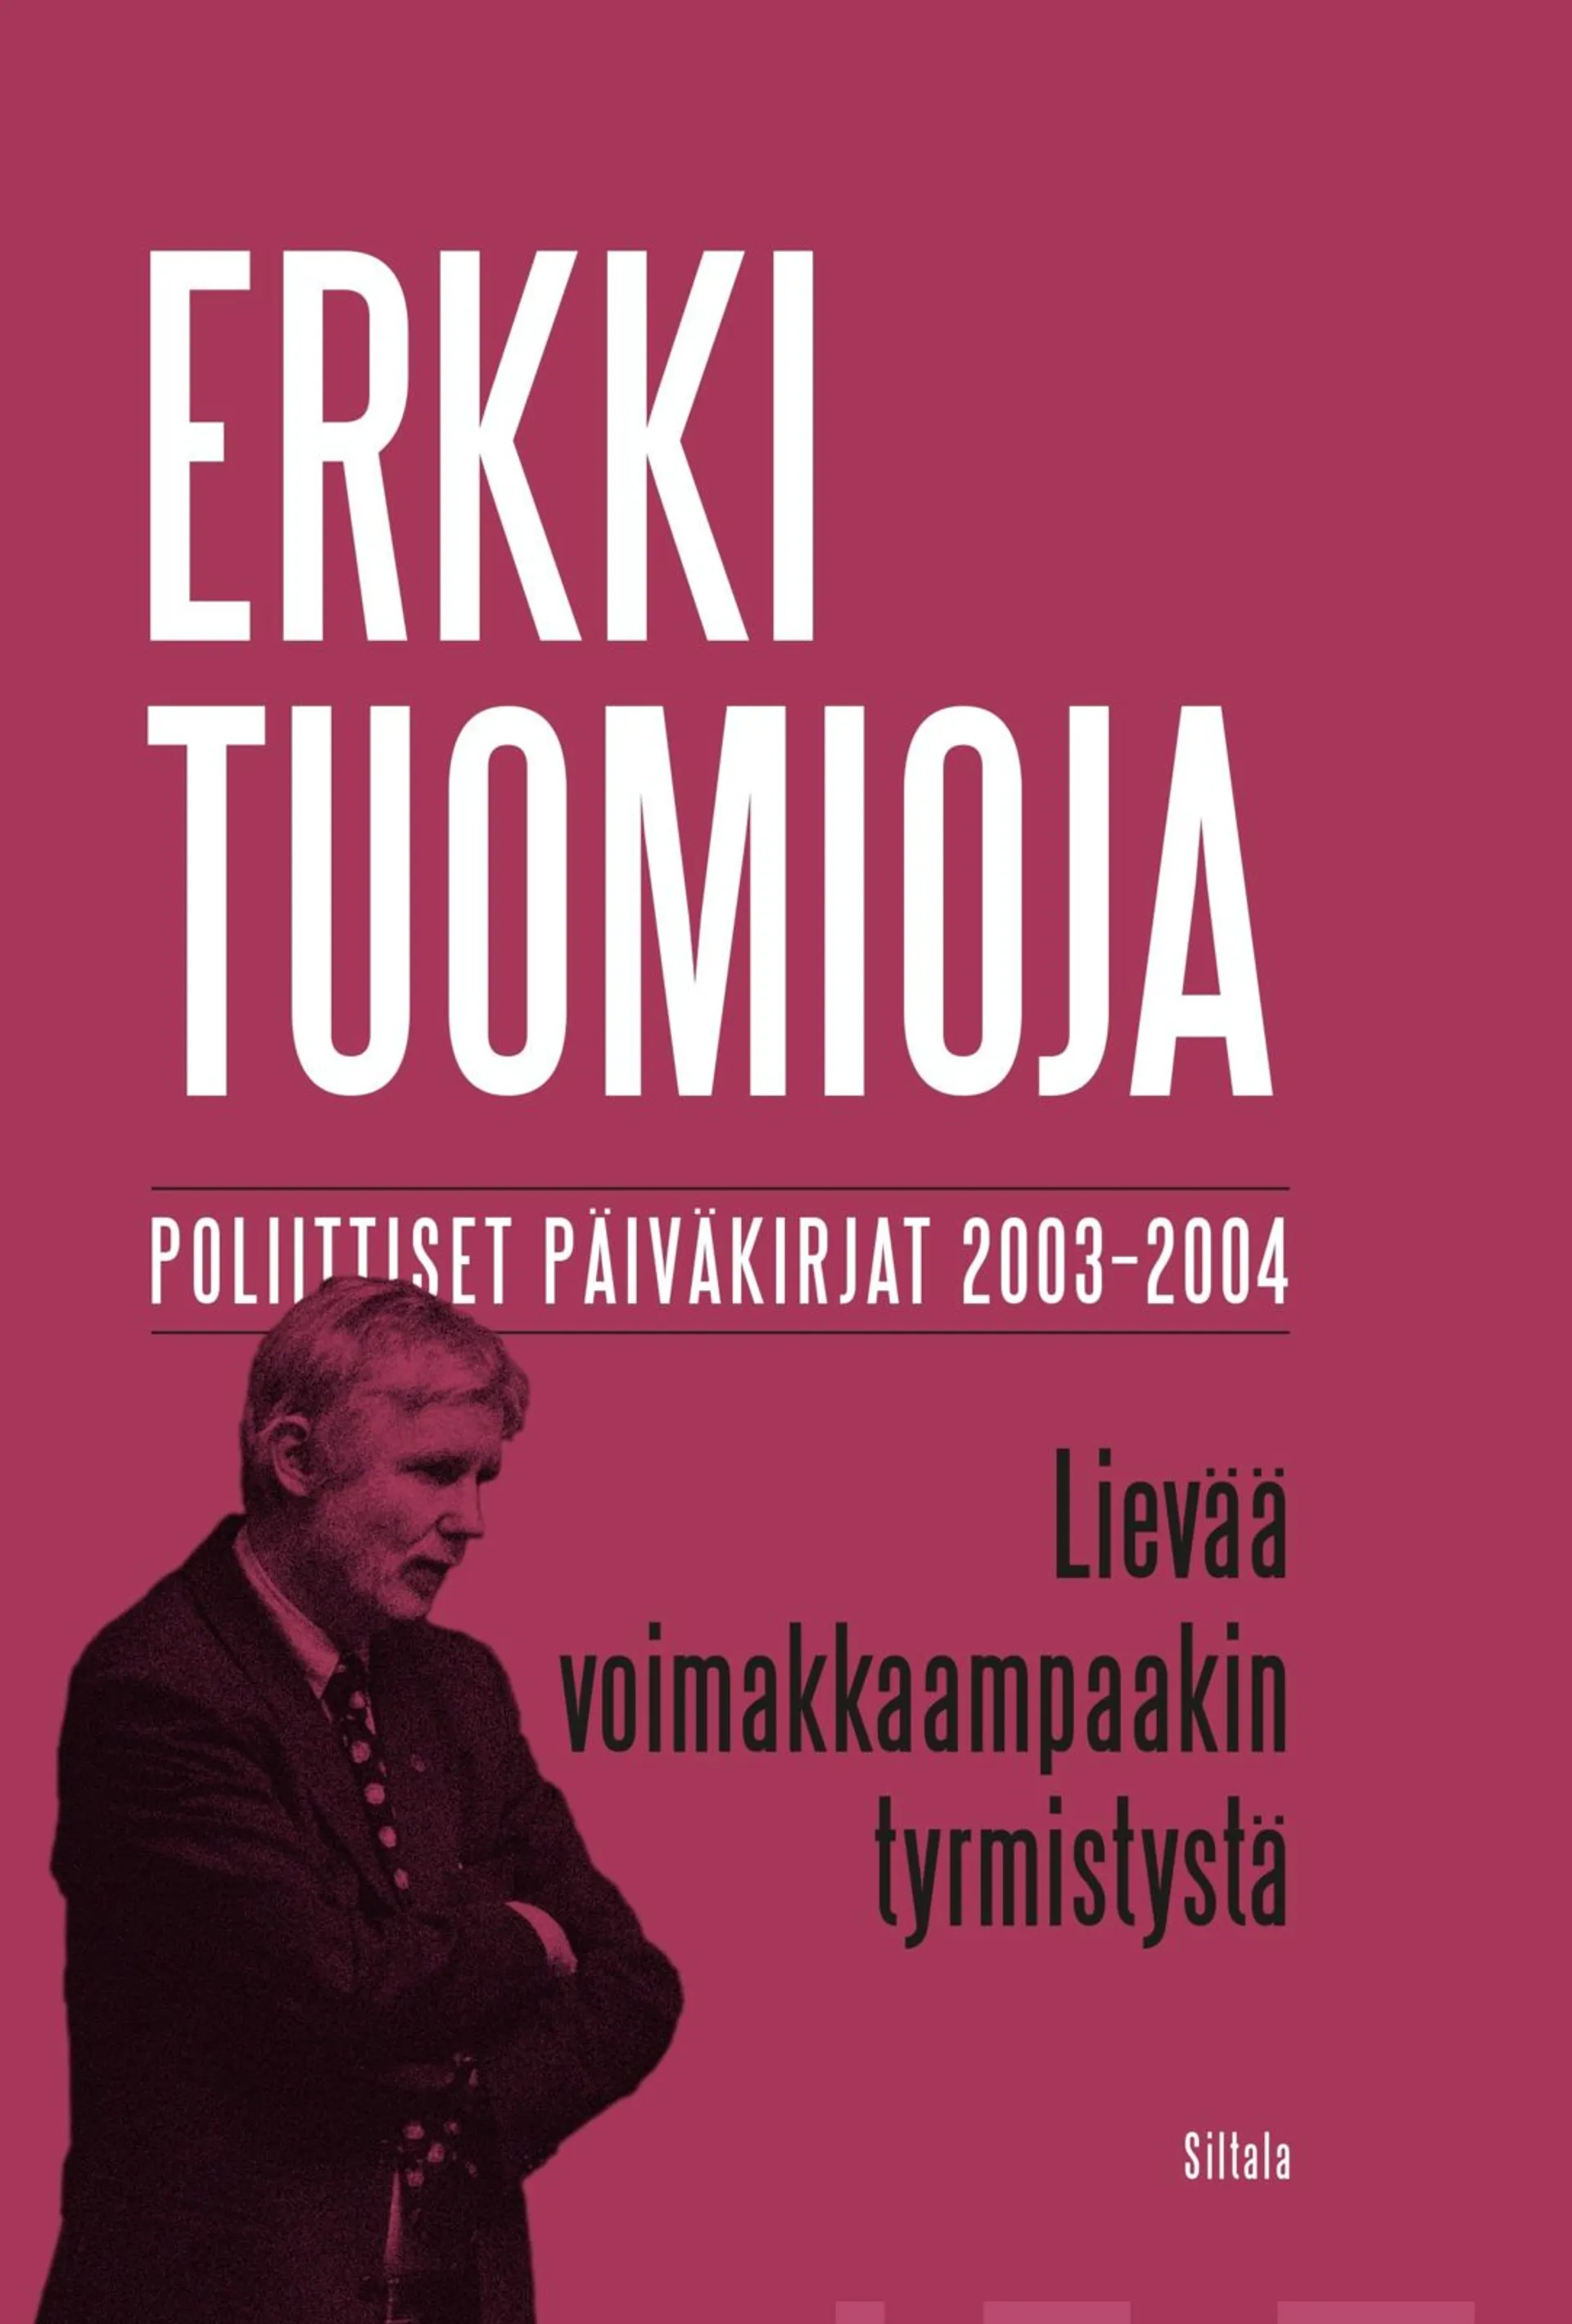 Tuomioja, Lievää voimakkaampaakin tyrmistystä - Poliittiset päiväkirjat 2003–2004